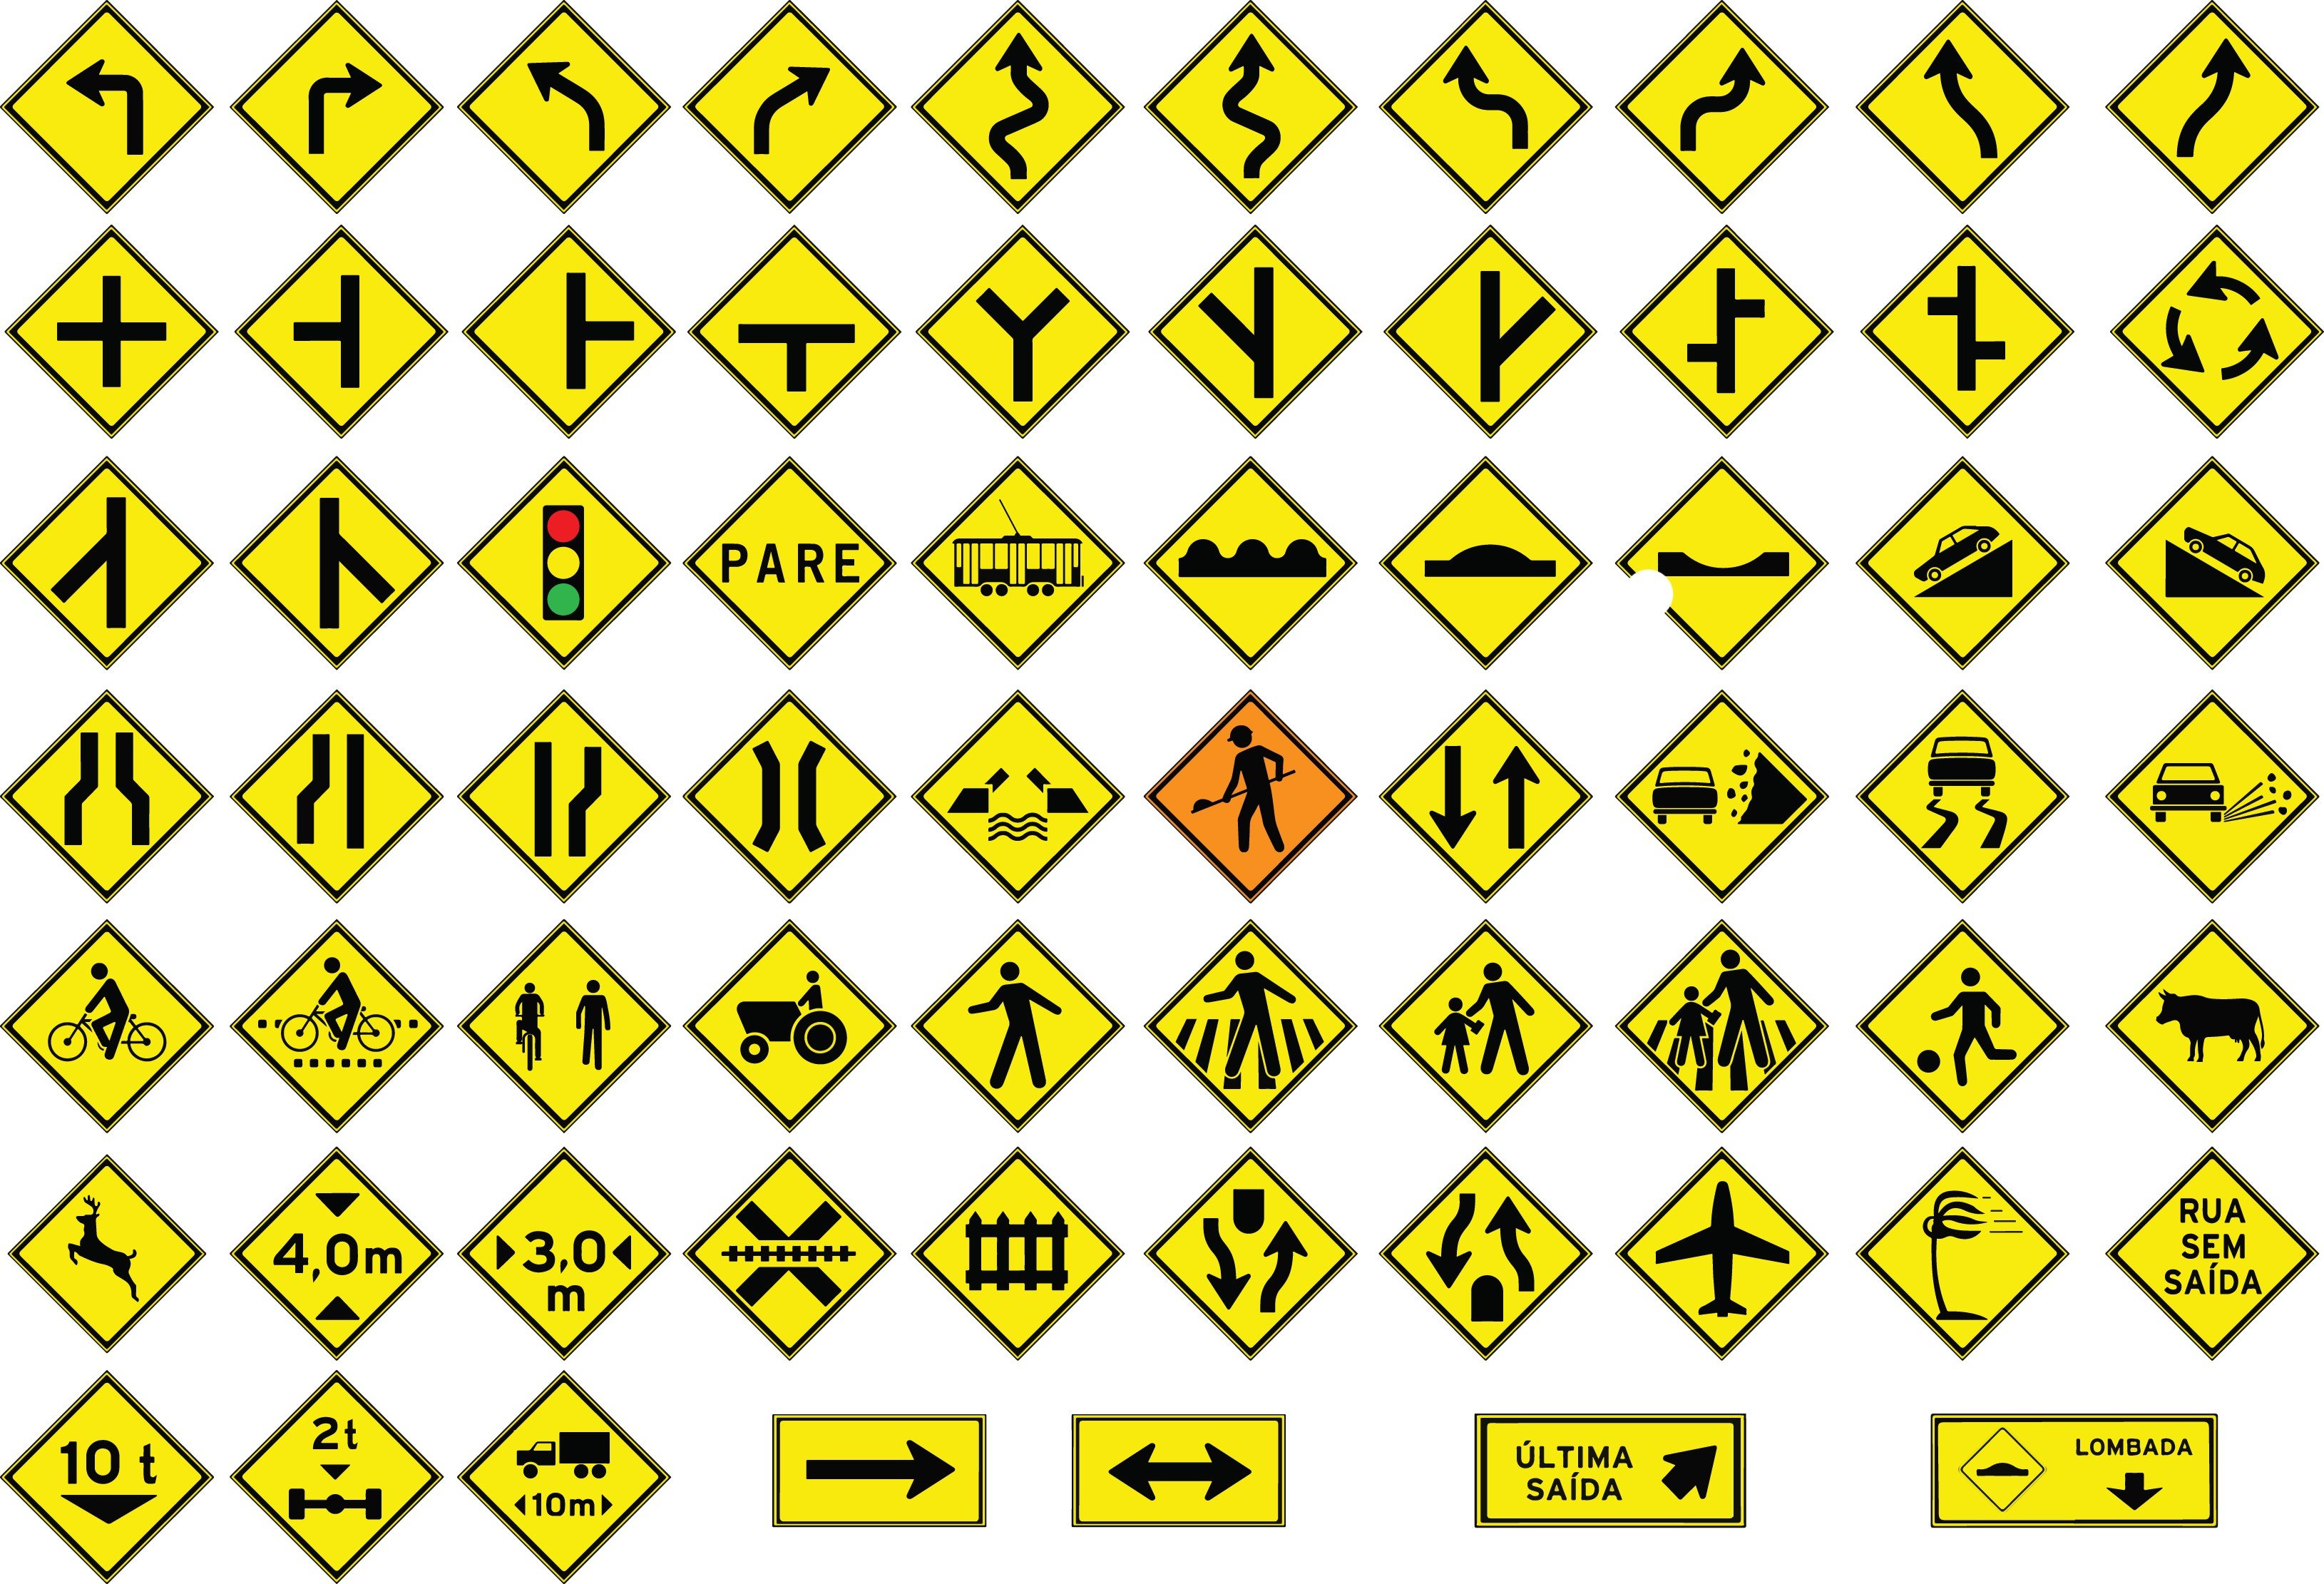 Placas de trânsito: significado das principais sinalizações